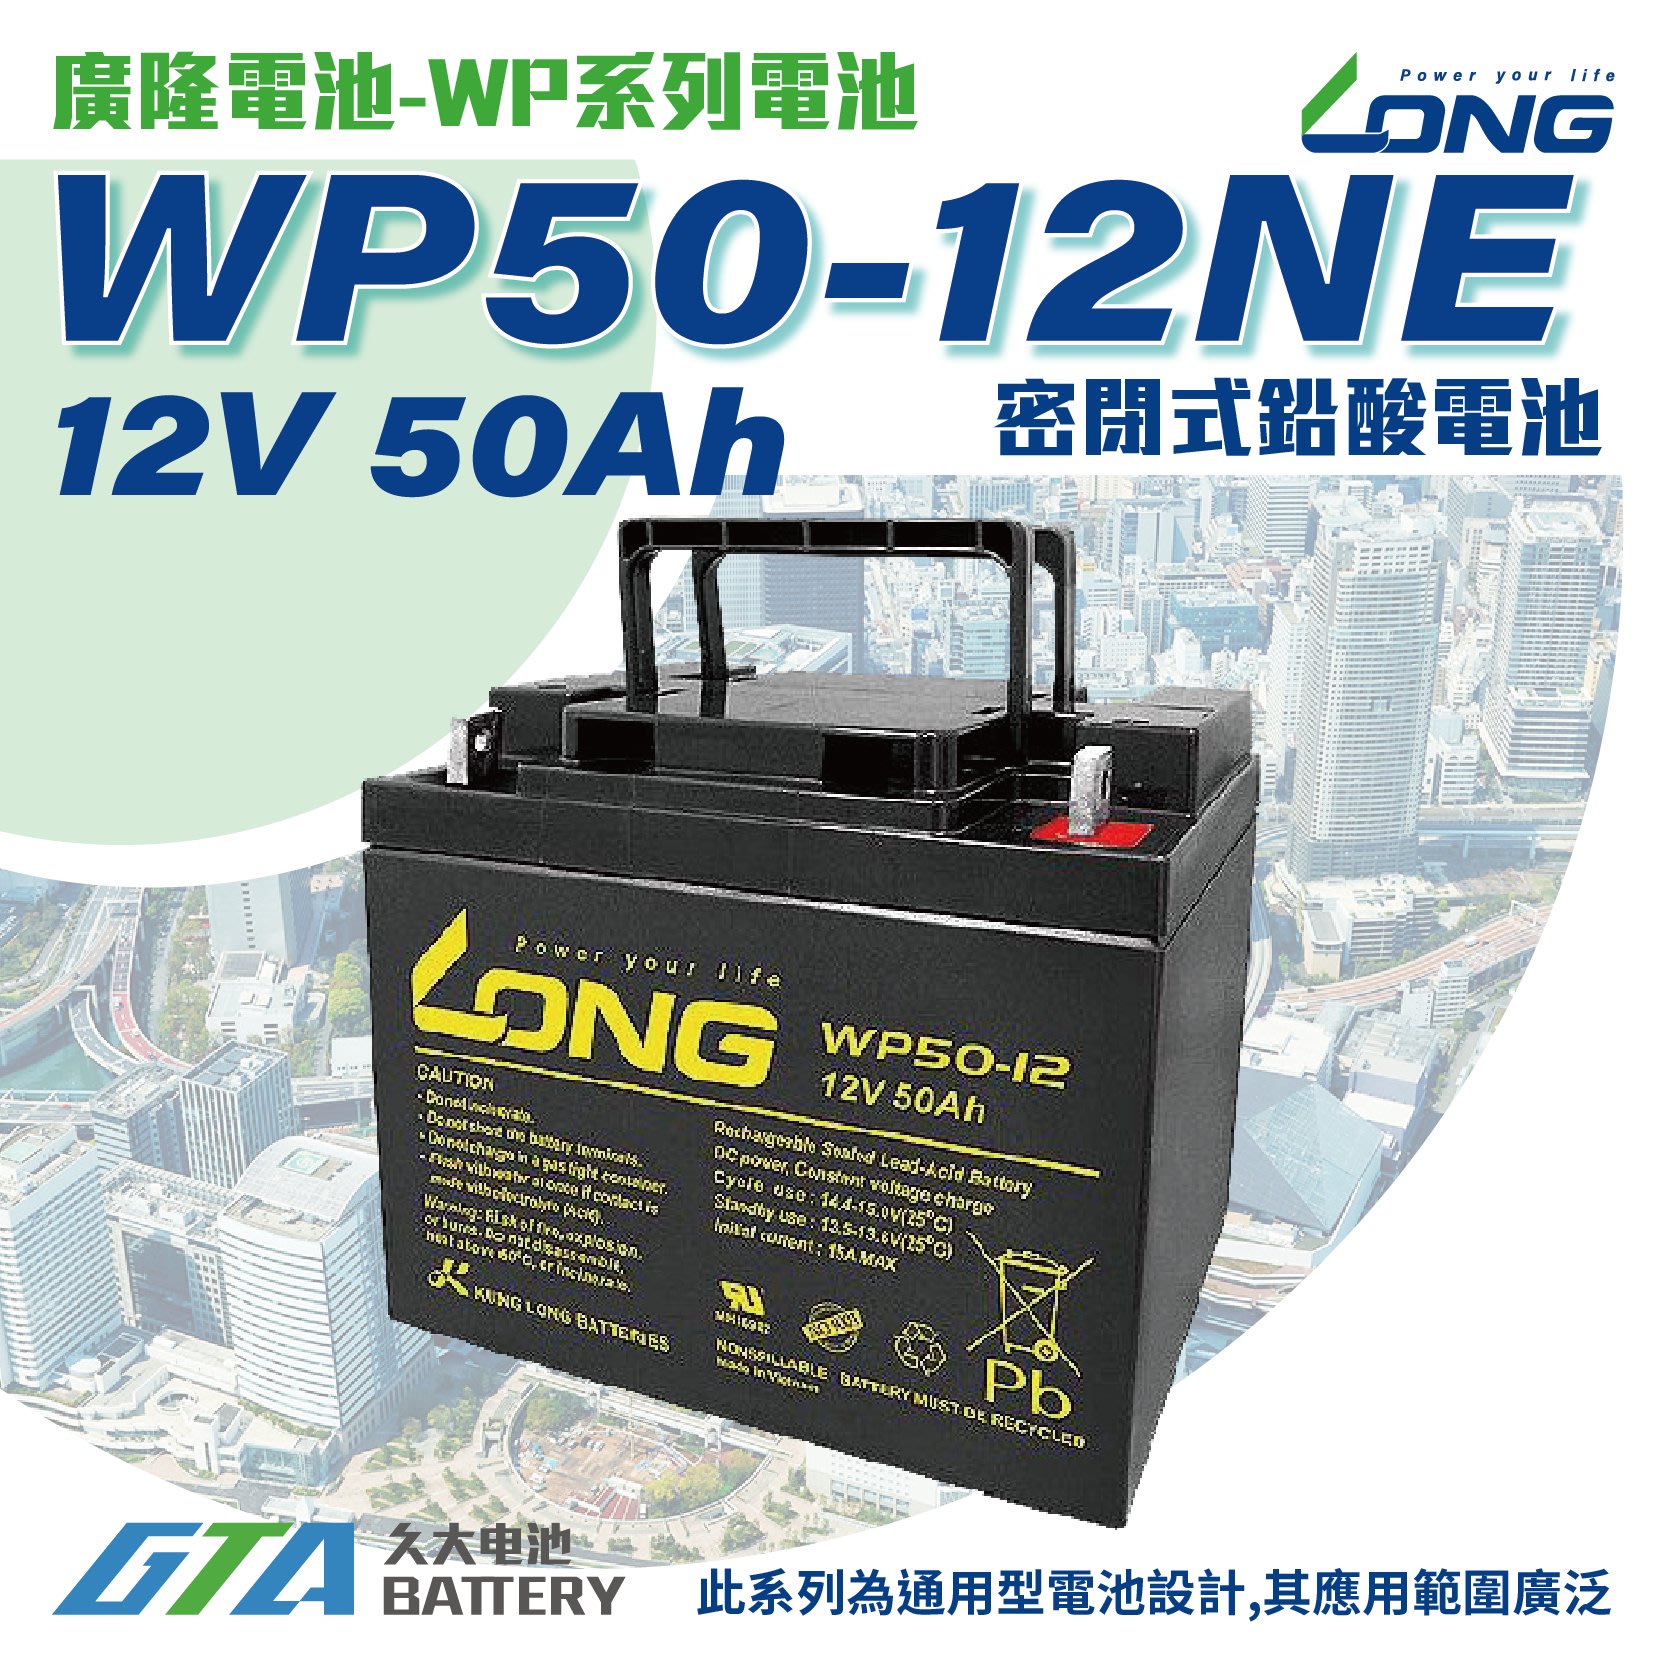 お値打ち価格で WP50-12NE 産業用鉛蓄電池 新品 LONG 長寿命 保証書付き 室内使用可 12V電源機器等に  サイクルバッテリー